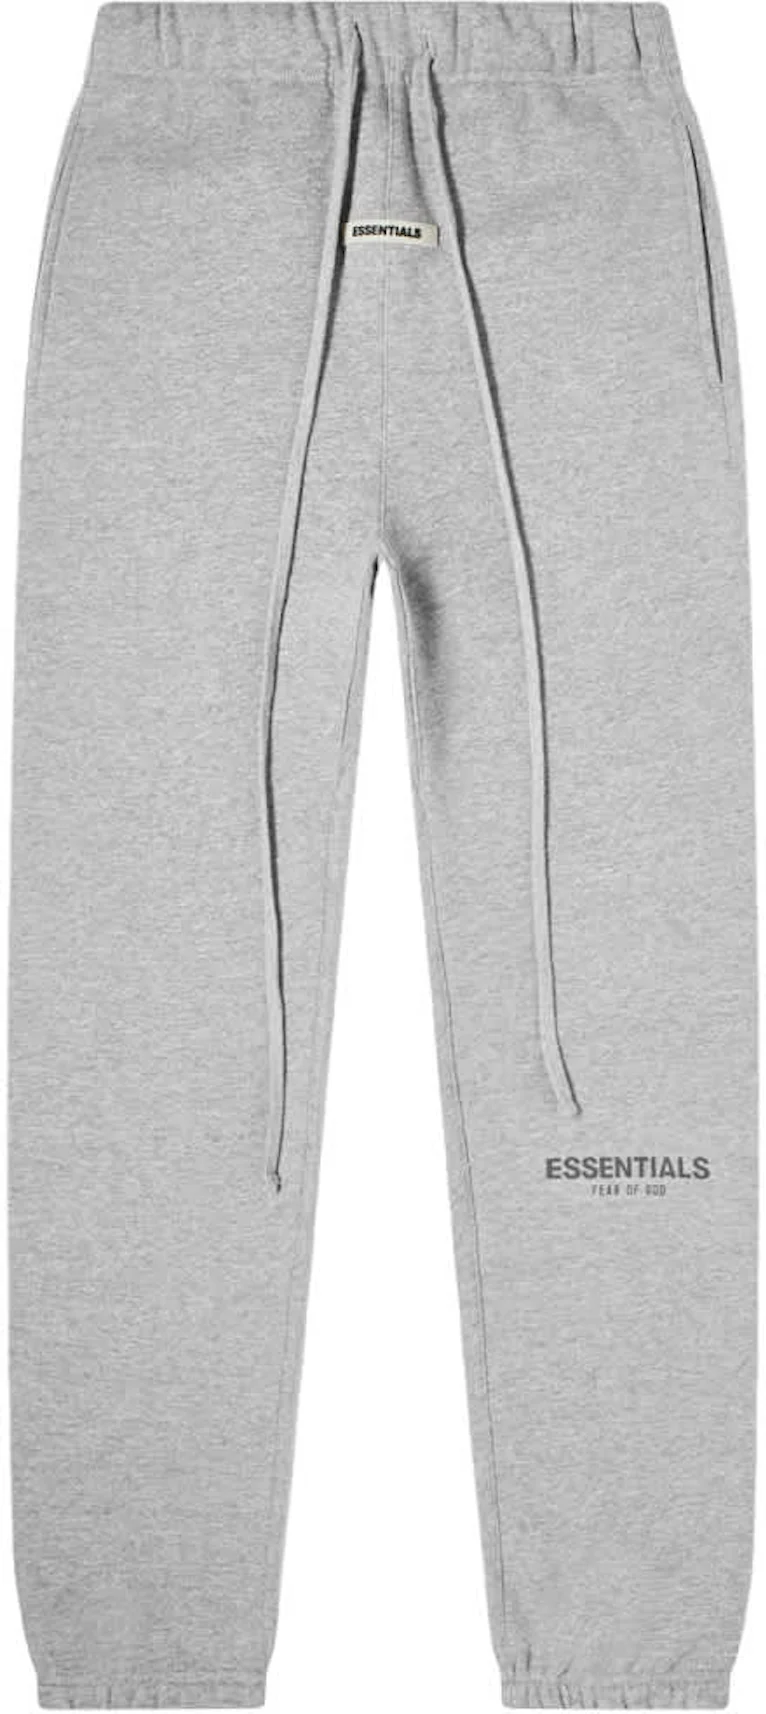 Fear of God Essentials Graphic Sweatpants Grey Men's - Essentials - US